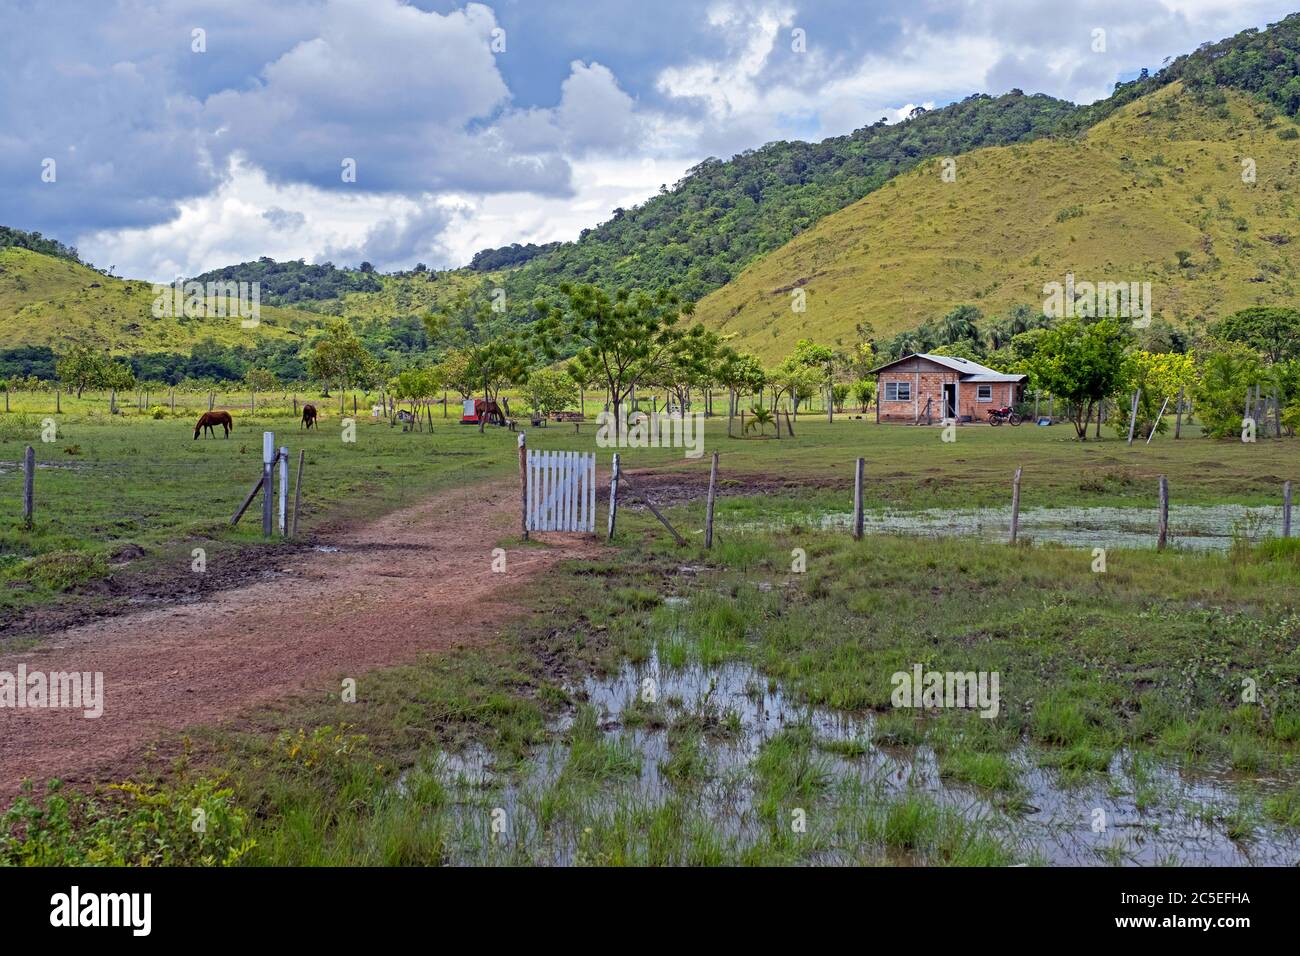 Piccola casa colonica sulla savana lungo la strada sterrata Linden-Lethem che collega Lethem e Georgetown nella stagione delle piogge, Guyana, Sud America Foto Stock